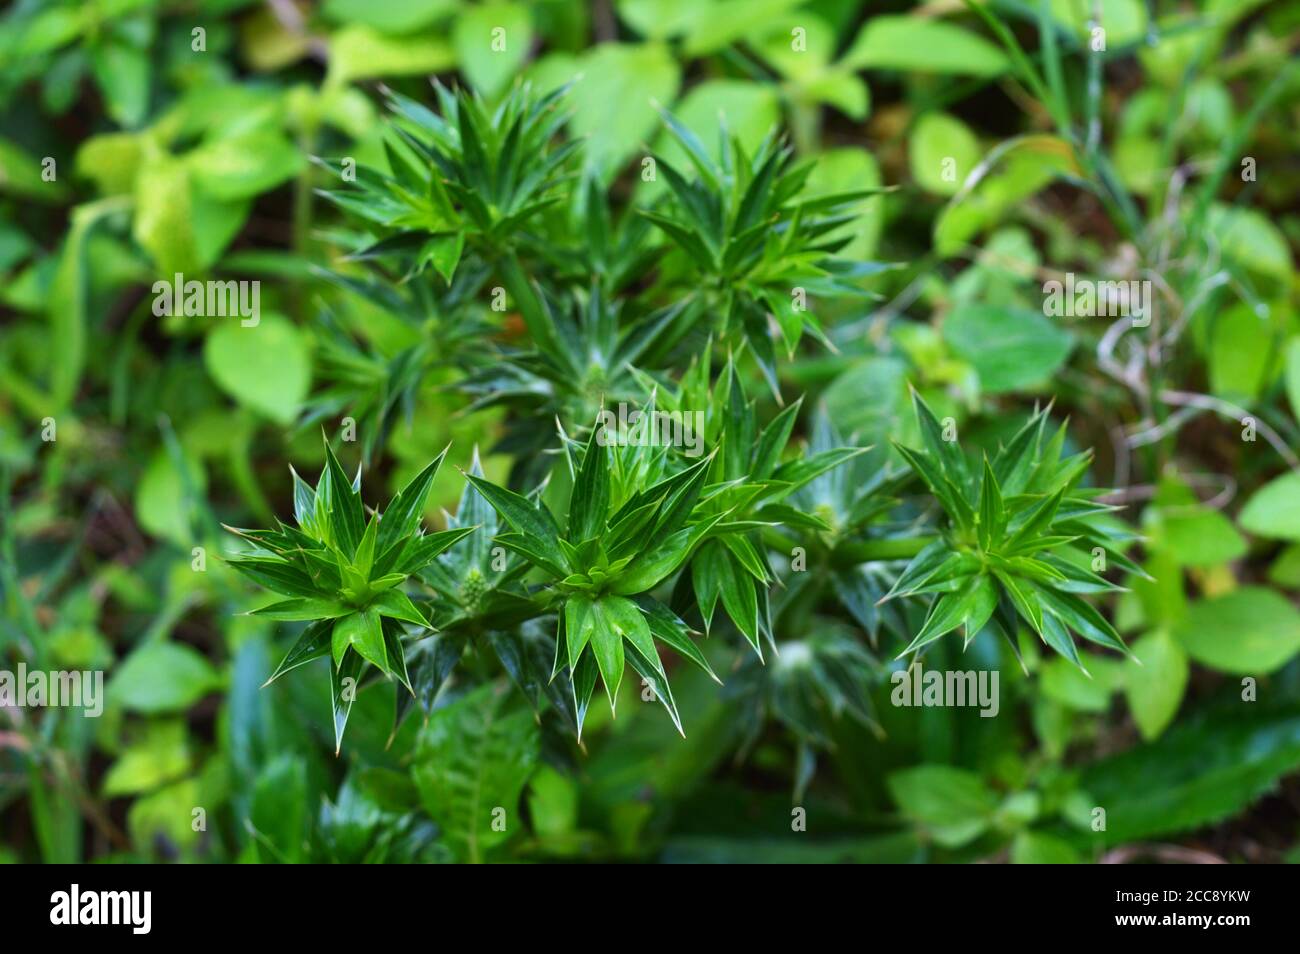 Culantro (Eryngium foetidum) cresce come la lattuga, con foglie intorno ad una rosetta centrale. Foto Stock